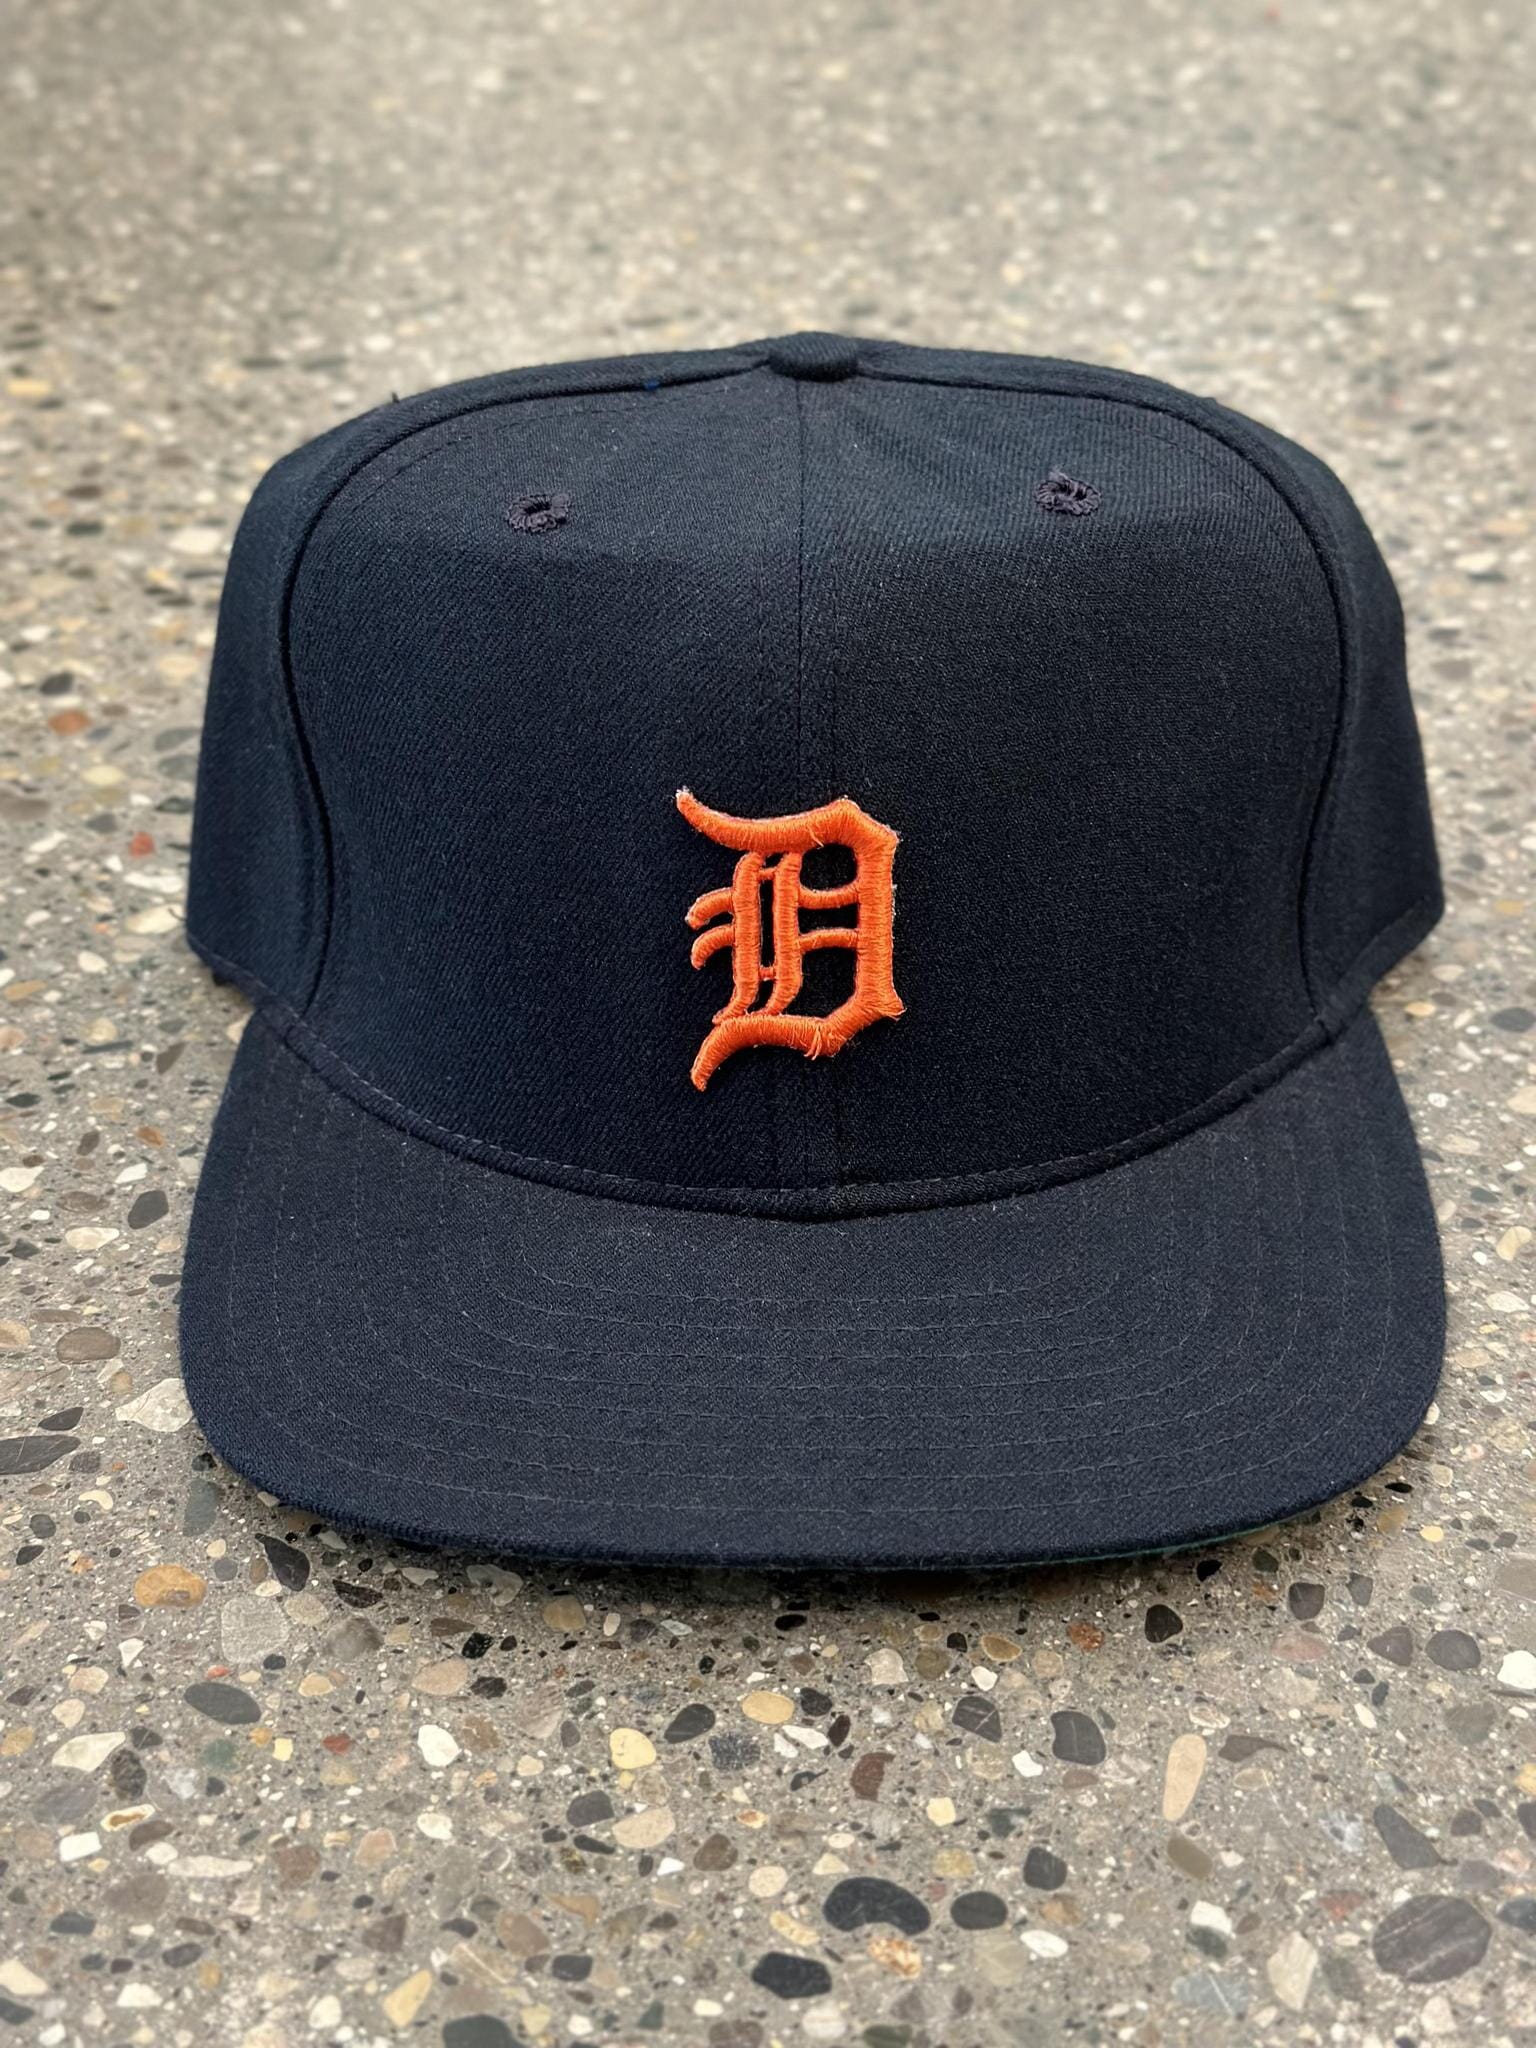 Vintage Detroit Tigers Snapback Hat